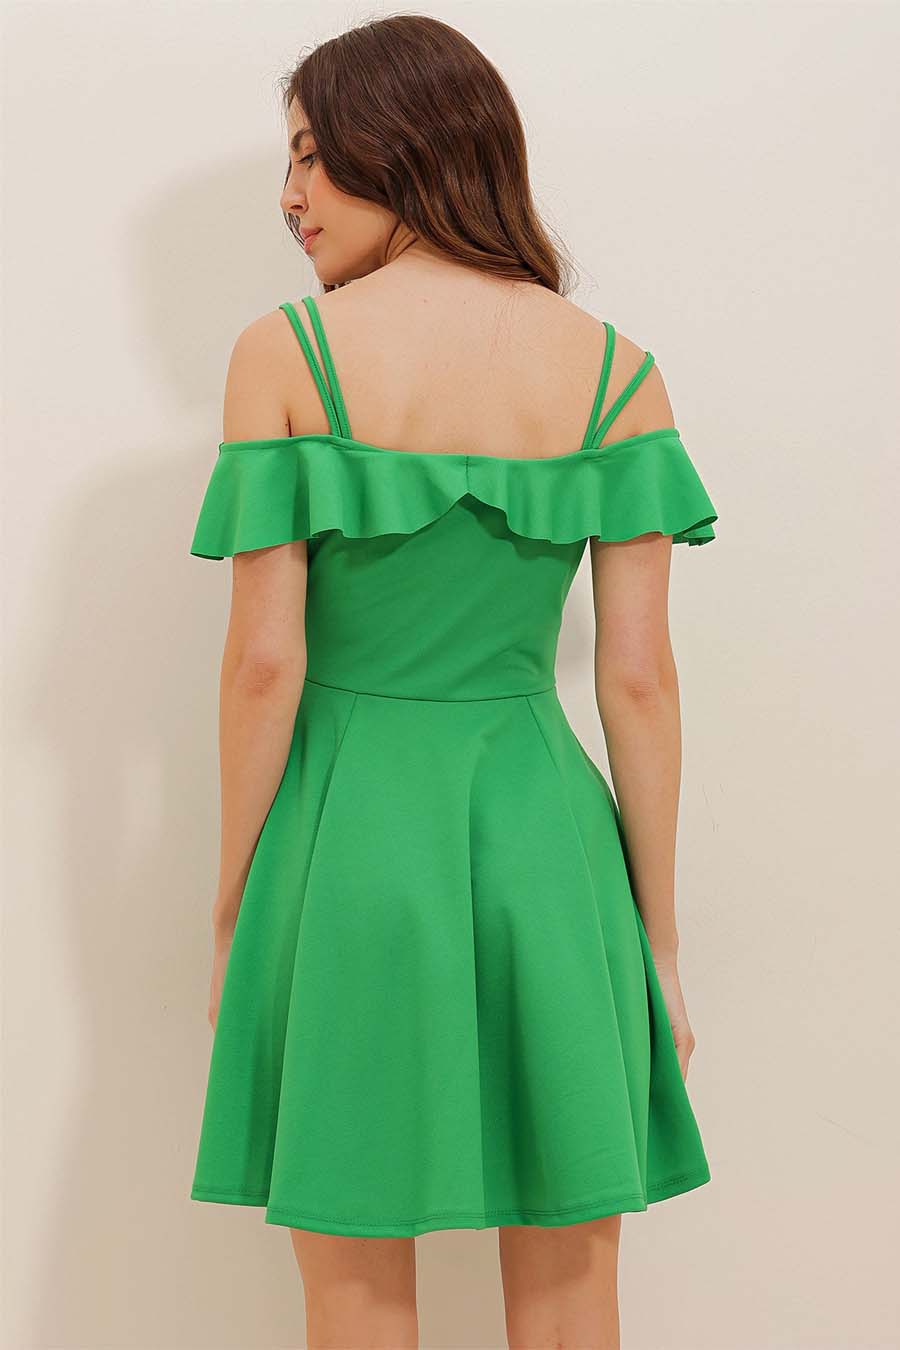 Γυναικείο φόρεμα Kaiea, Πράσινο 5